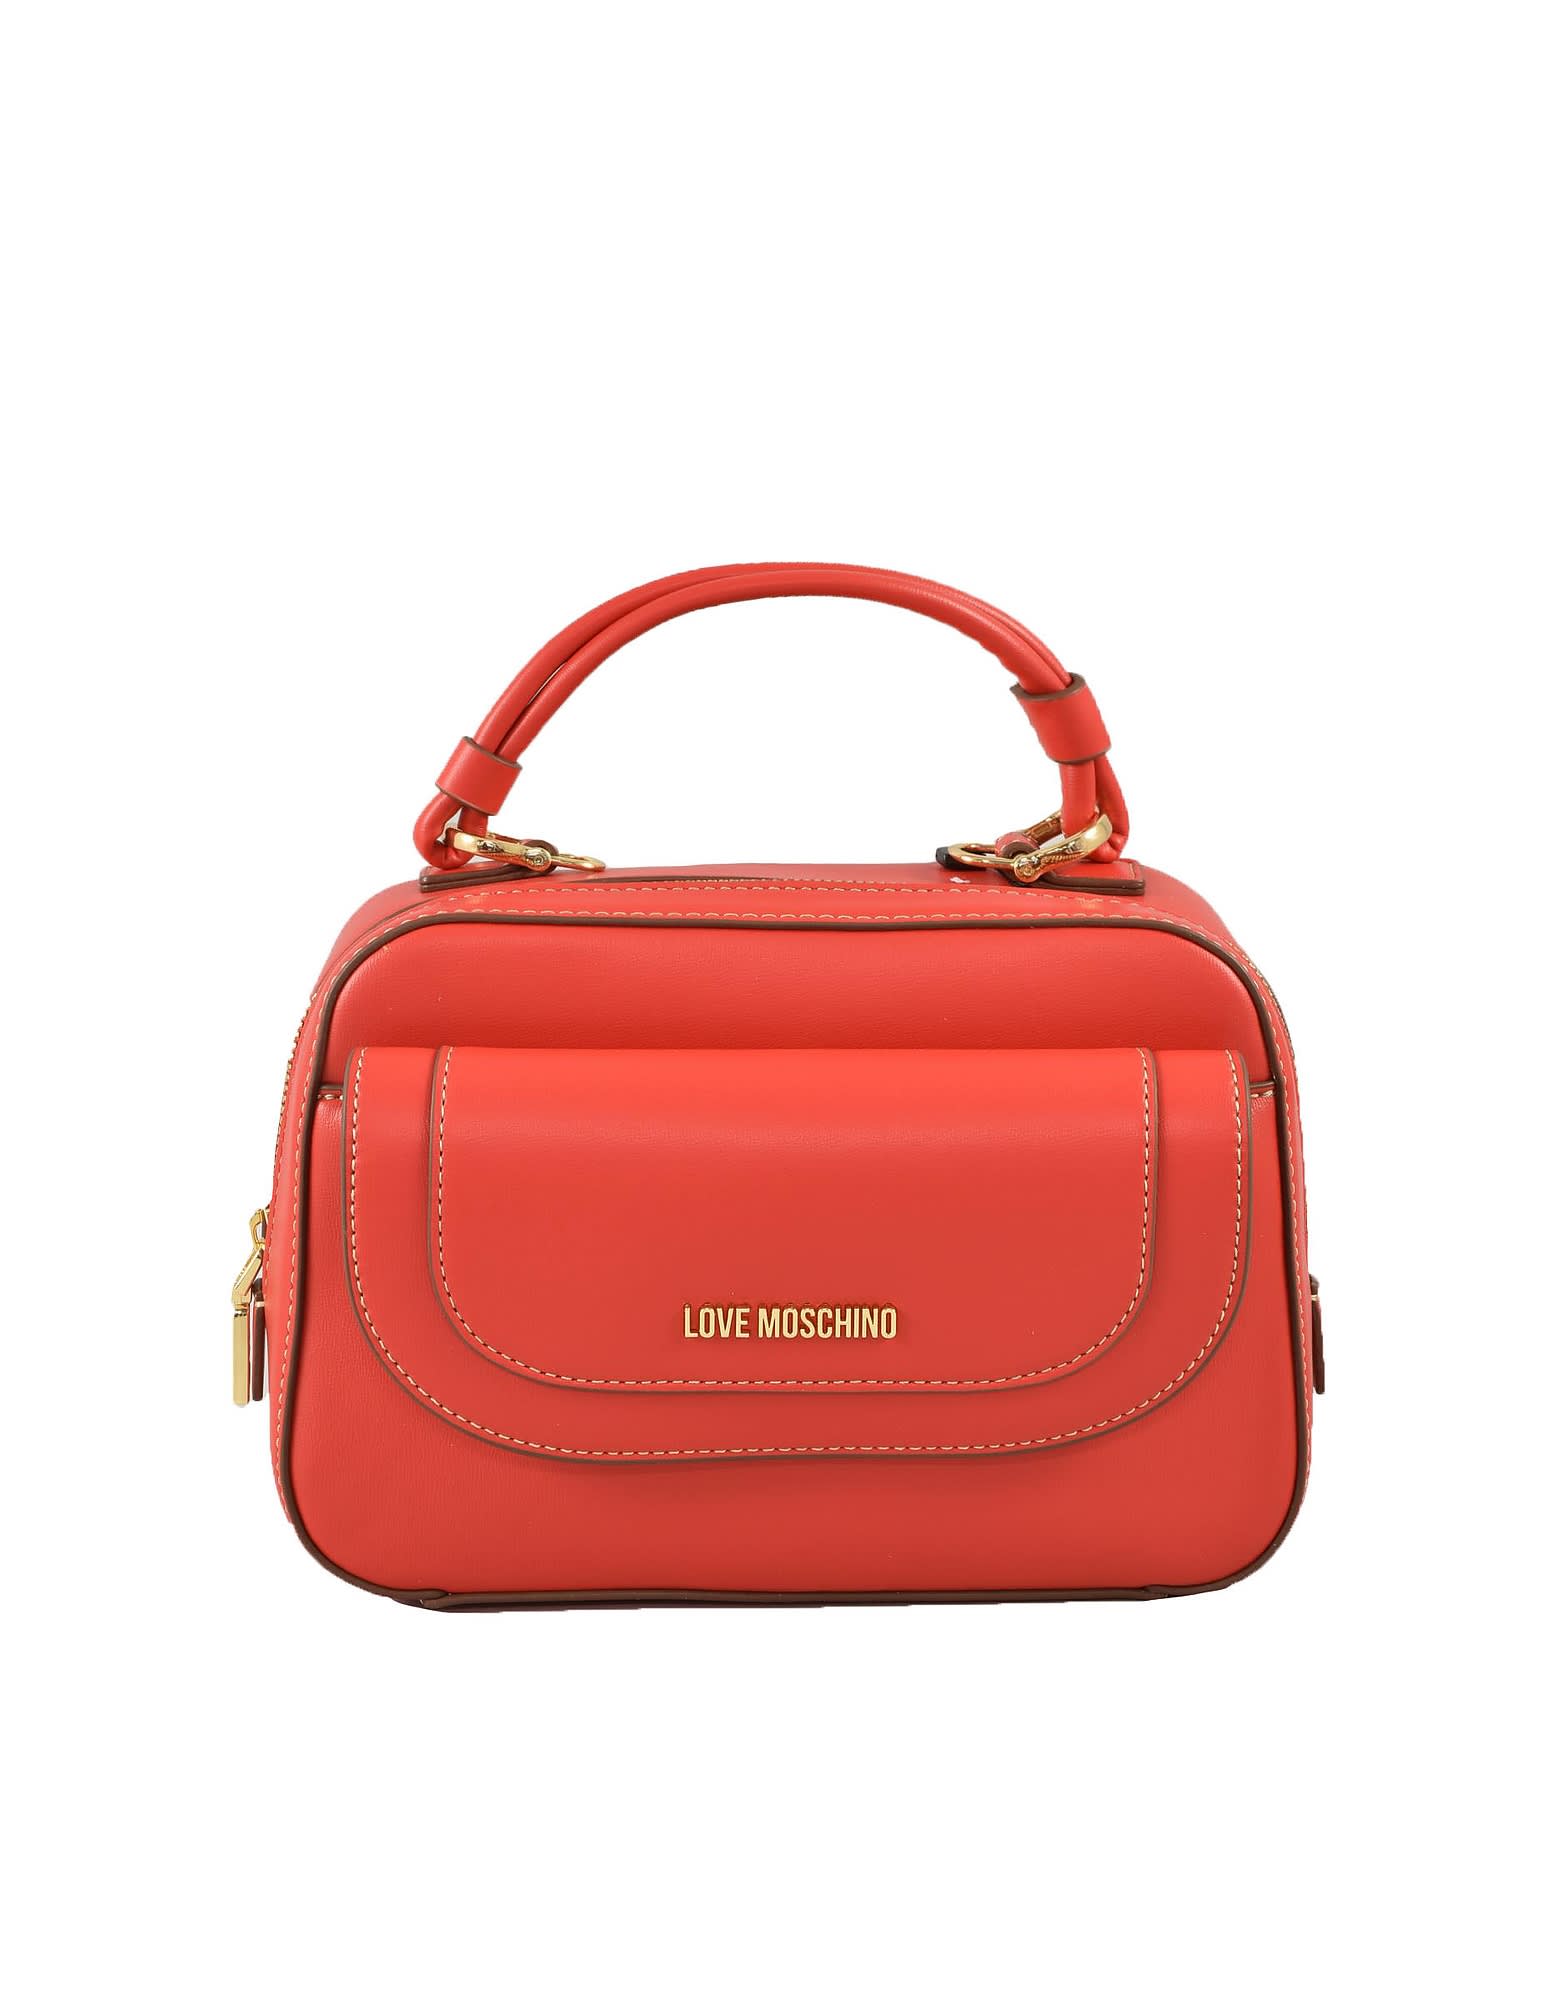 Love Moschino Womens Red Handbag